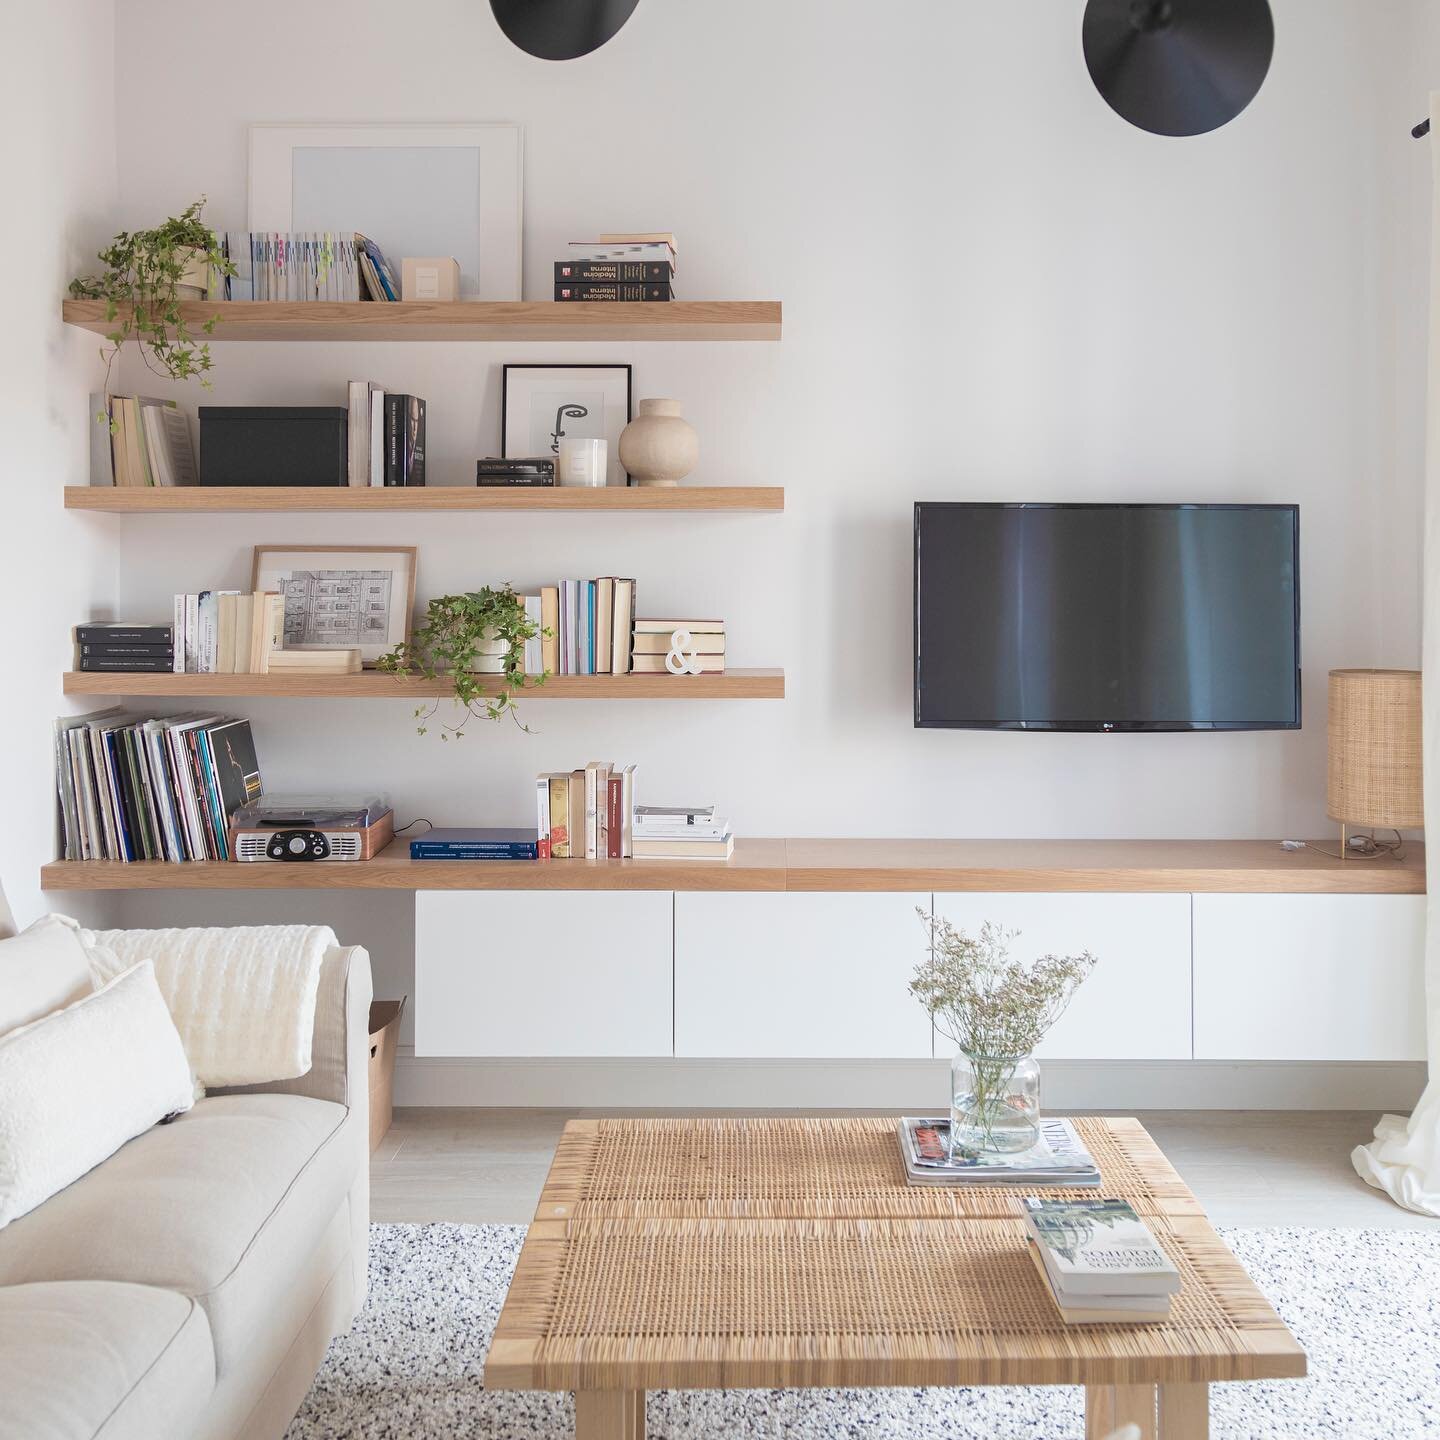 Relax
.
.
.
#interiordesign #interiorismo #livingroom #madrid #drömmeriinteriorismo #rinconesconencanto
.
.
. 
📷 by: @amauresse